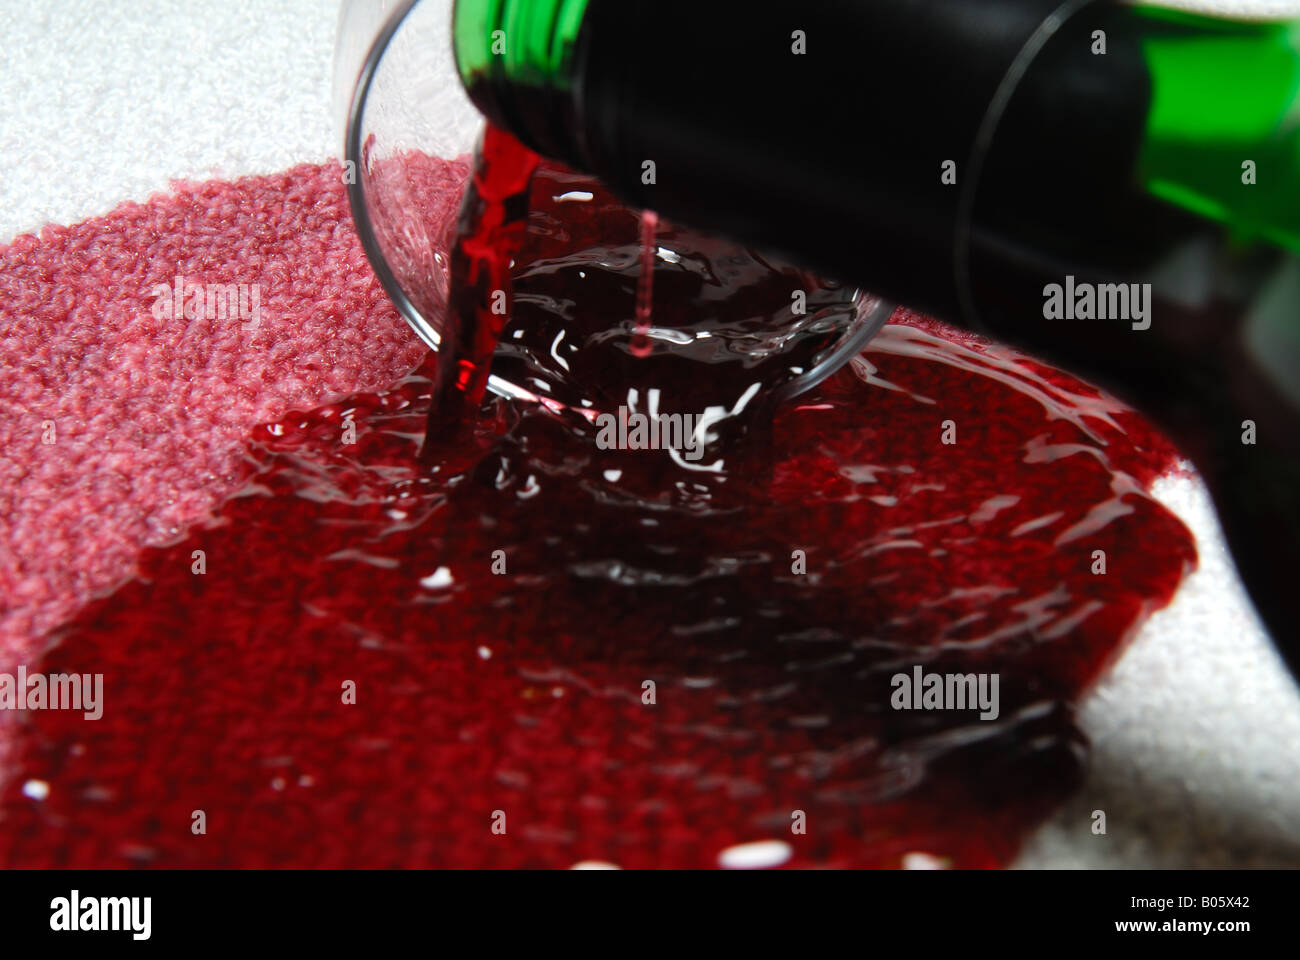 Verschüttete Rotwein auf Teppich Stockfotografie - Alamy